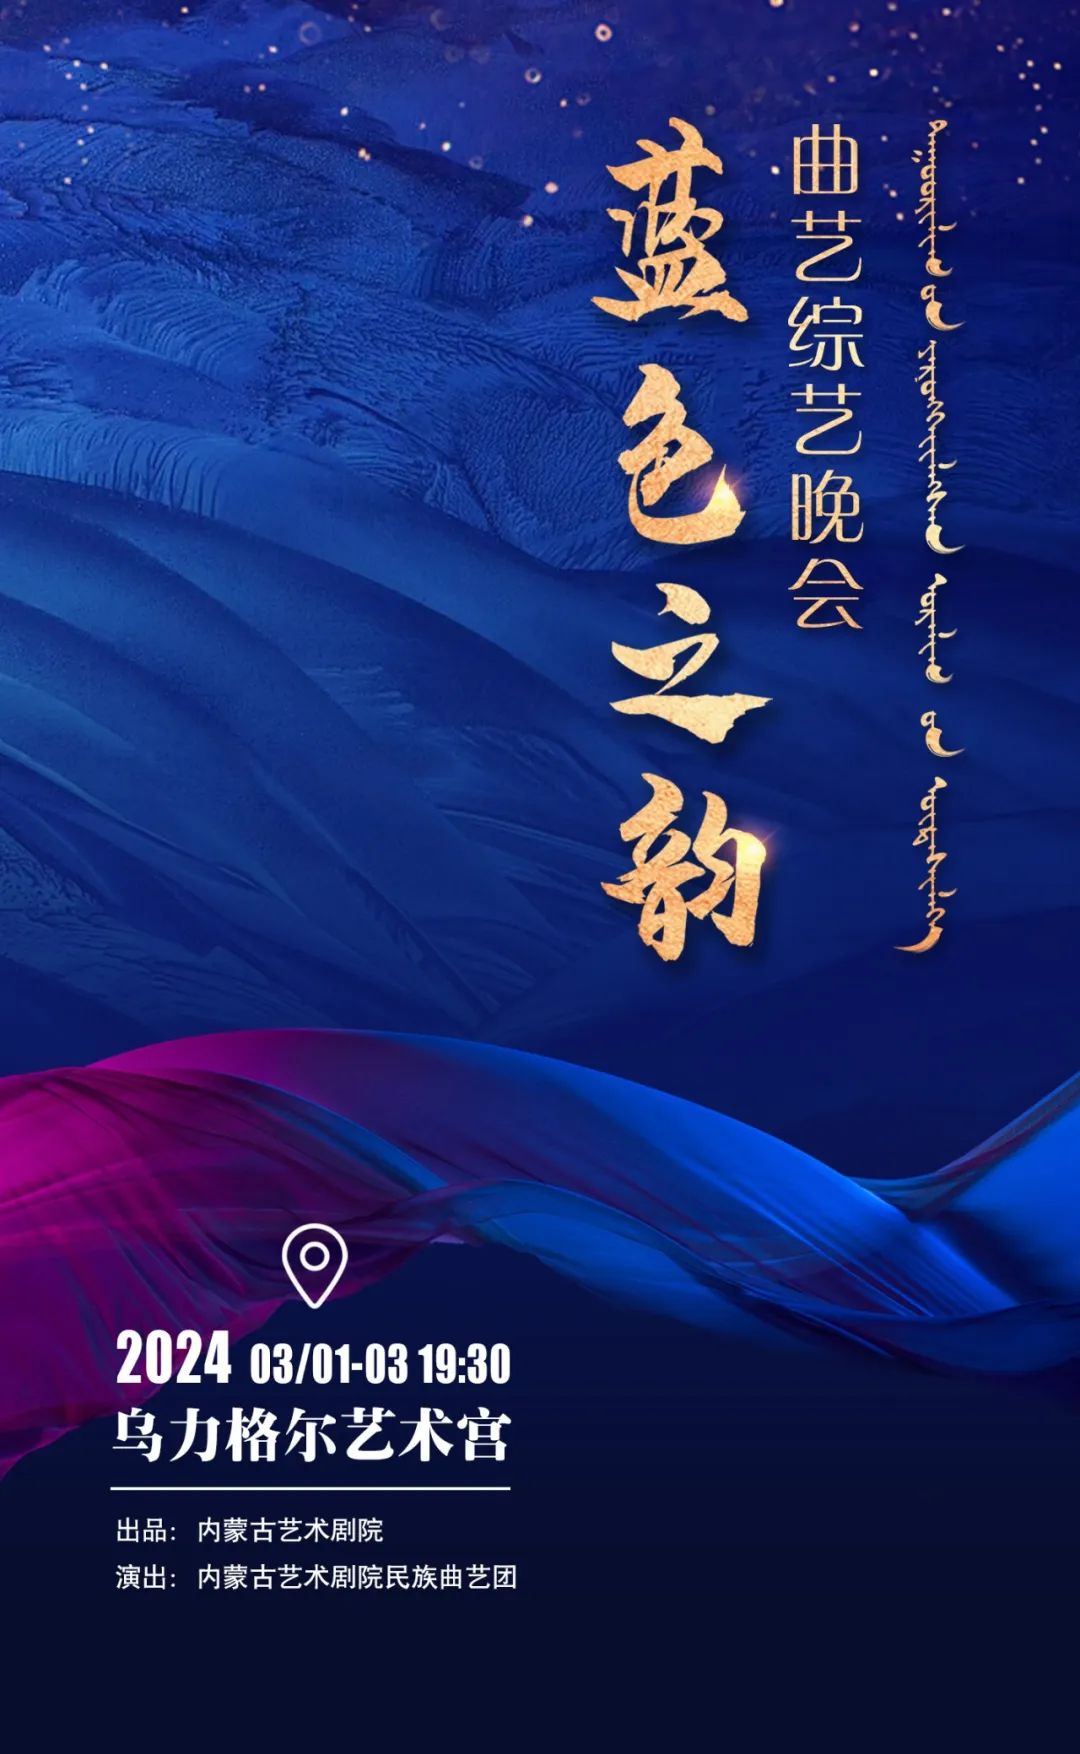 标题：【开票】民族曲艺综艺晚会《蓝色之韵》，将内蒙古民风民俗氛围感拉满！
点击数：187
发表时间：2024-03-01